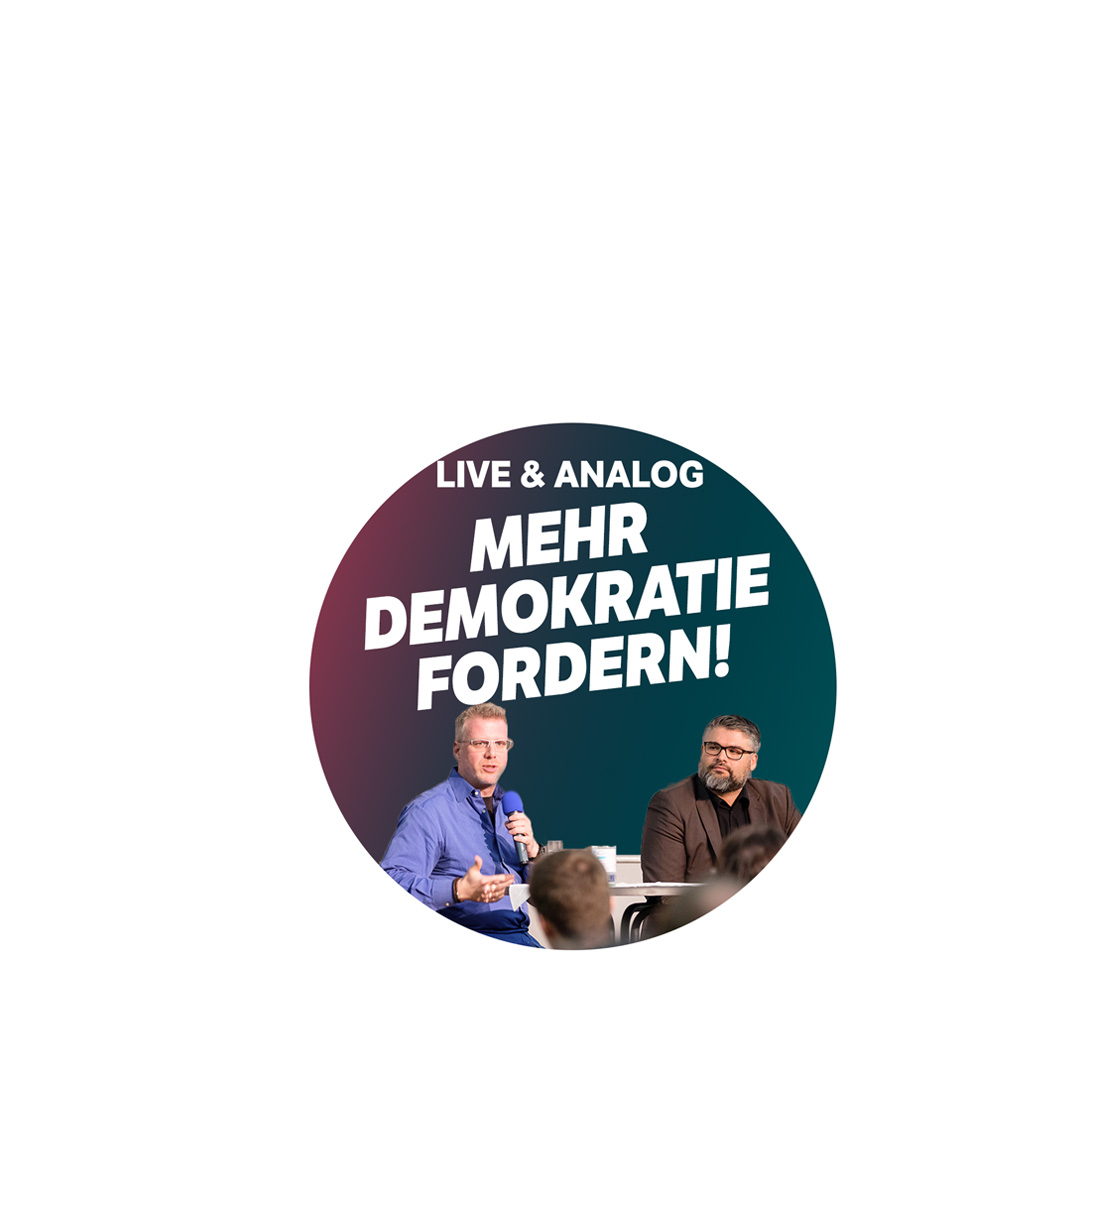 Soziopod Live & Analog #018: "Mehr Demokratie fordern" mit John Dewey in Hannover